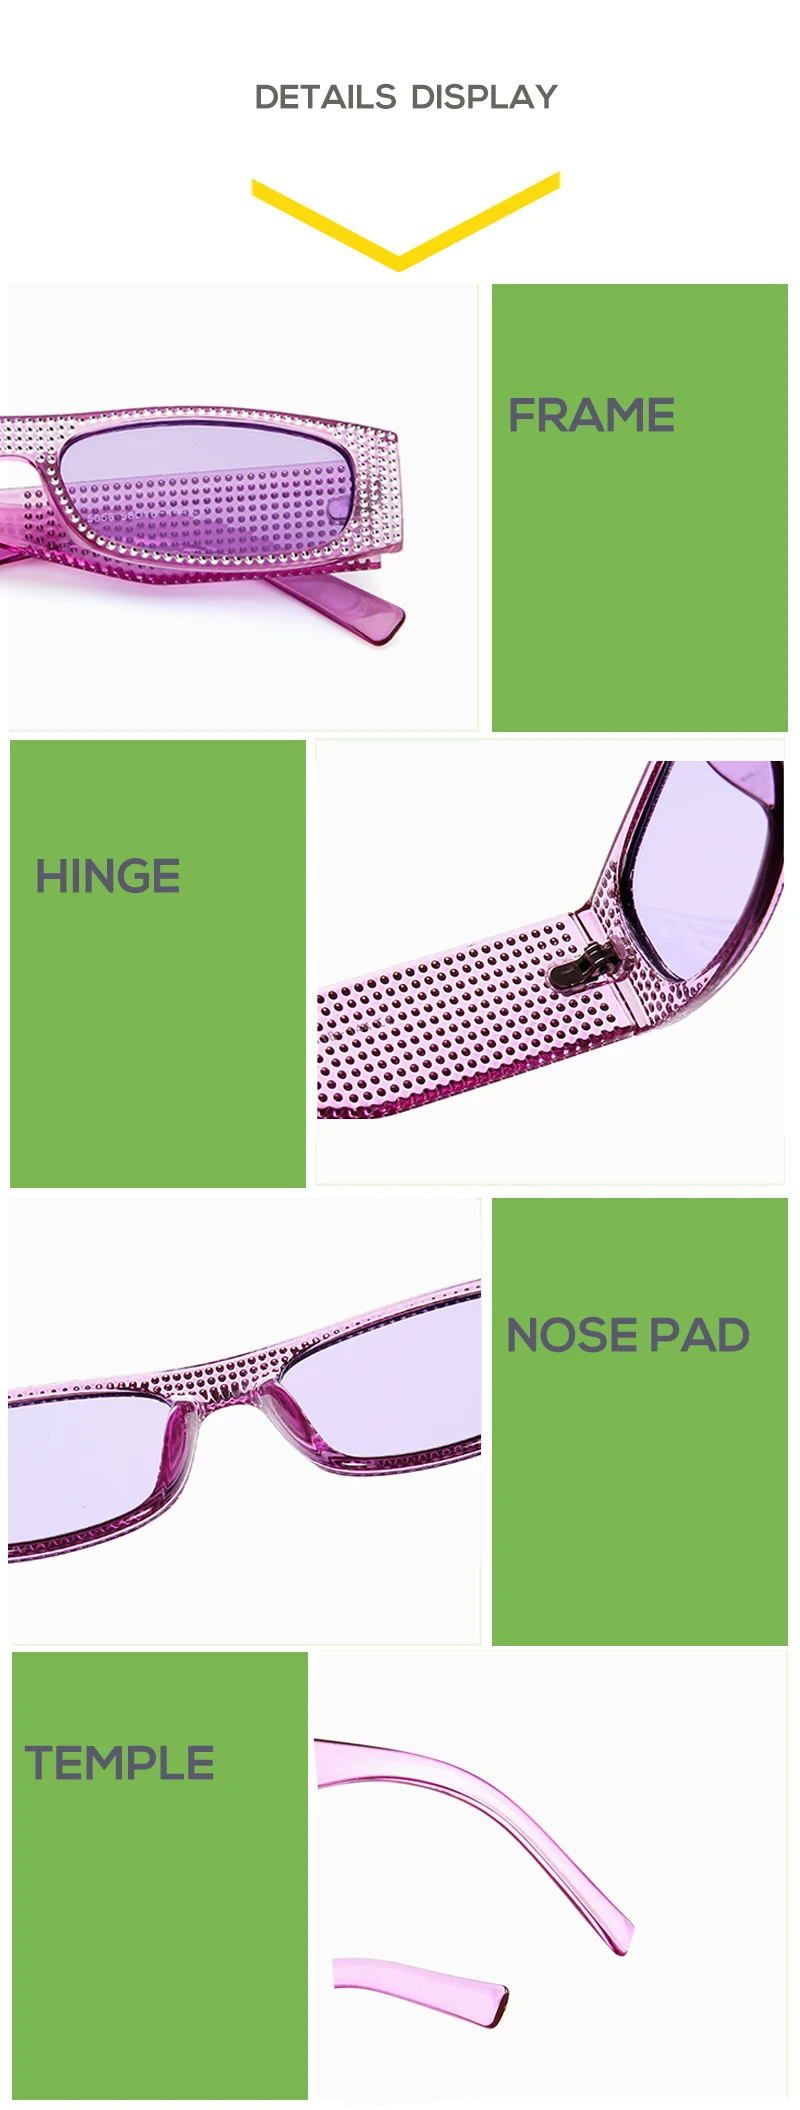 SORVINO, винтажные блестящие узкие прямоугольные солнцезащитные очки, женские роскошные брендовые дизайнерские цветные прямоугольные солнцезащитные очки, солнцезащитные очки Oculos SP86